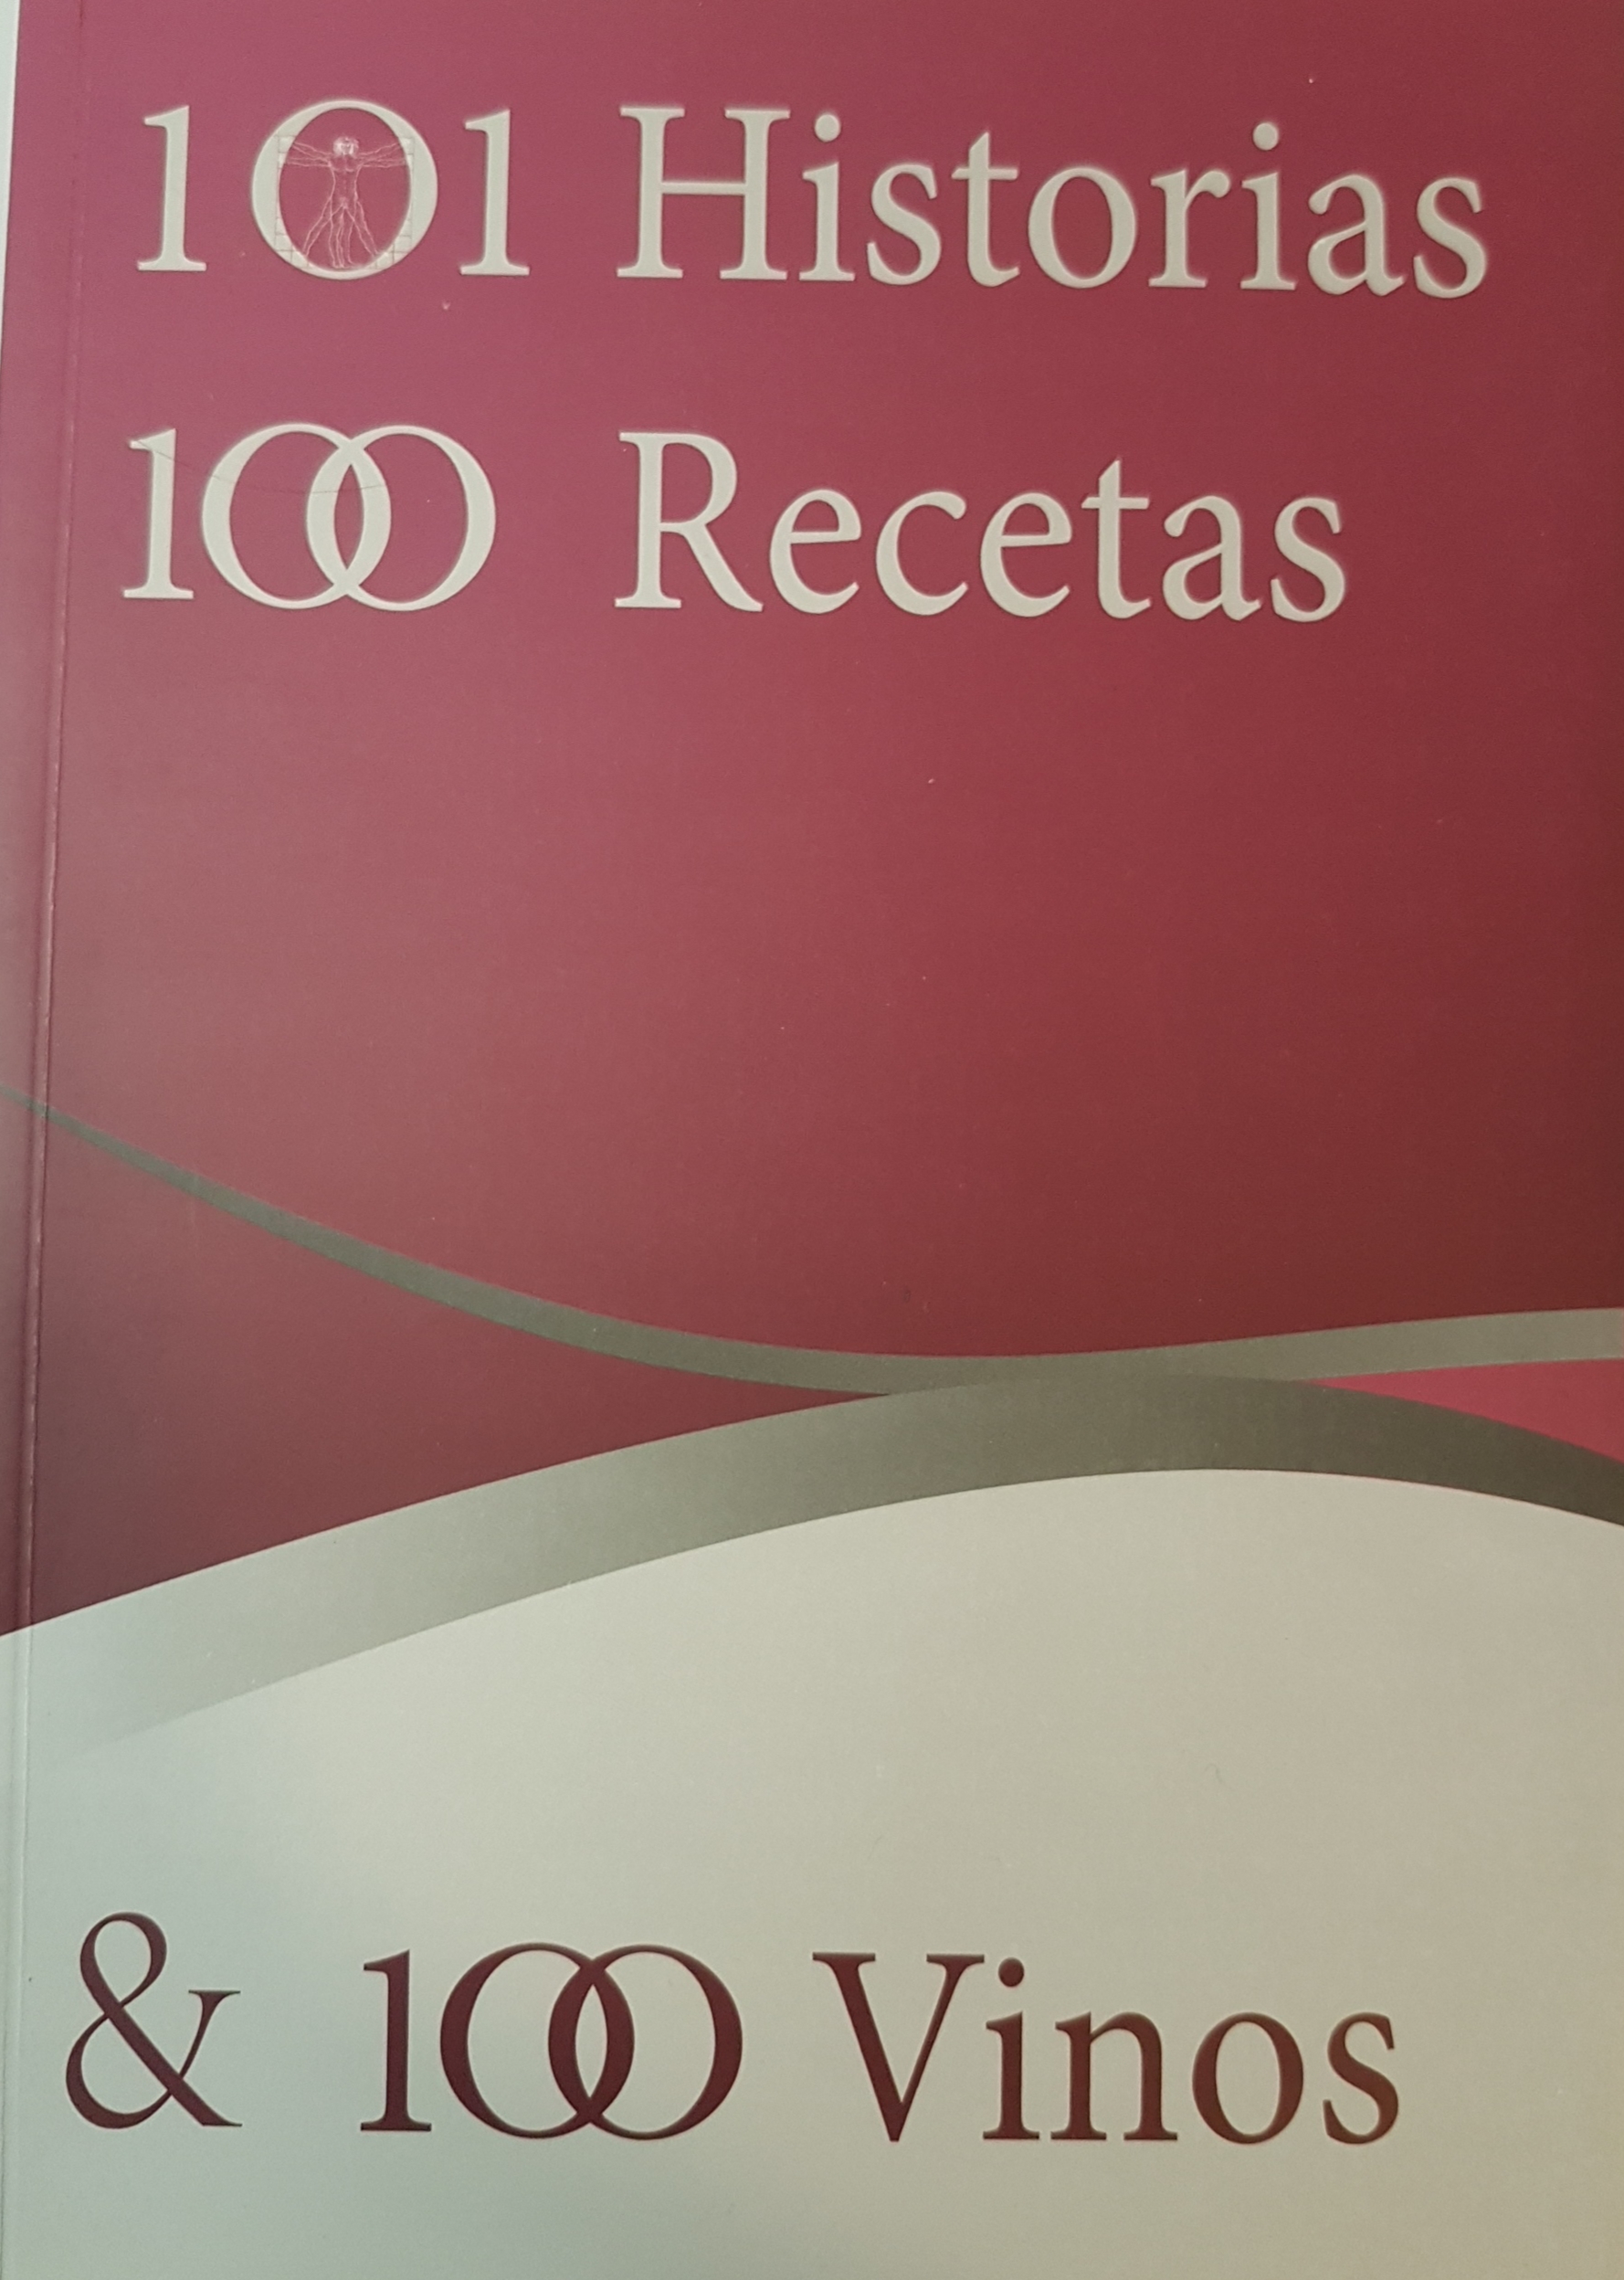 101 Historias 101 Recetas & 100 Vinos (2012)